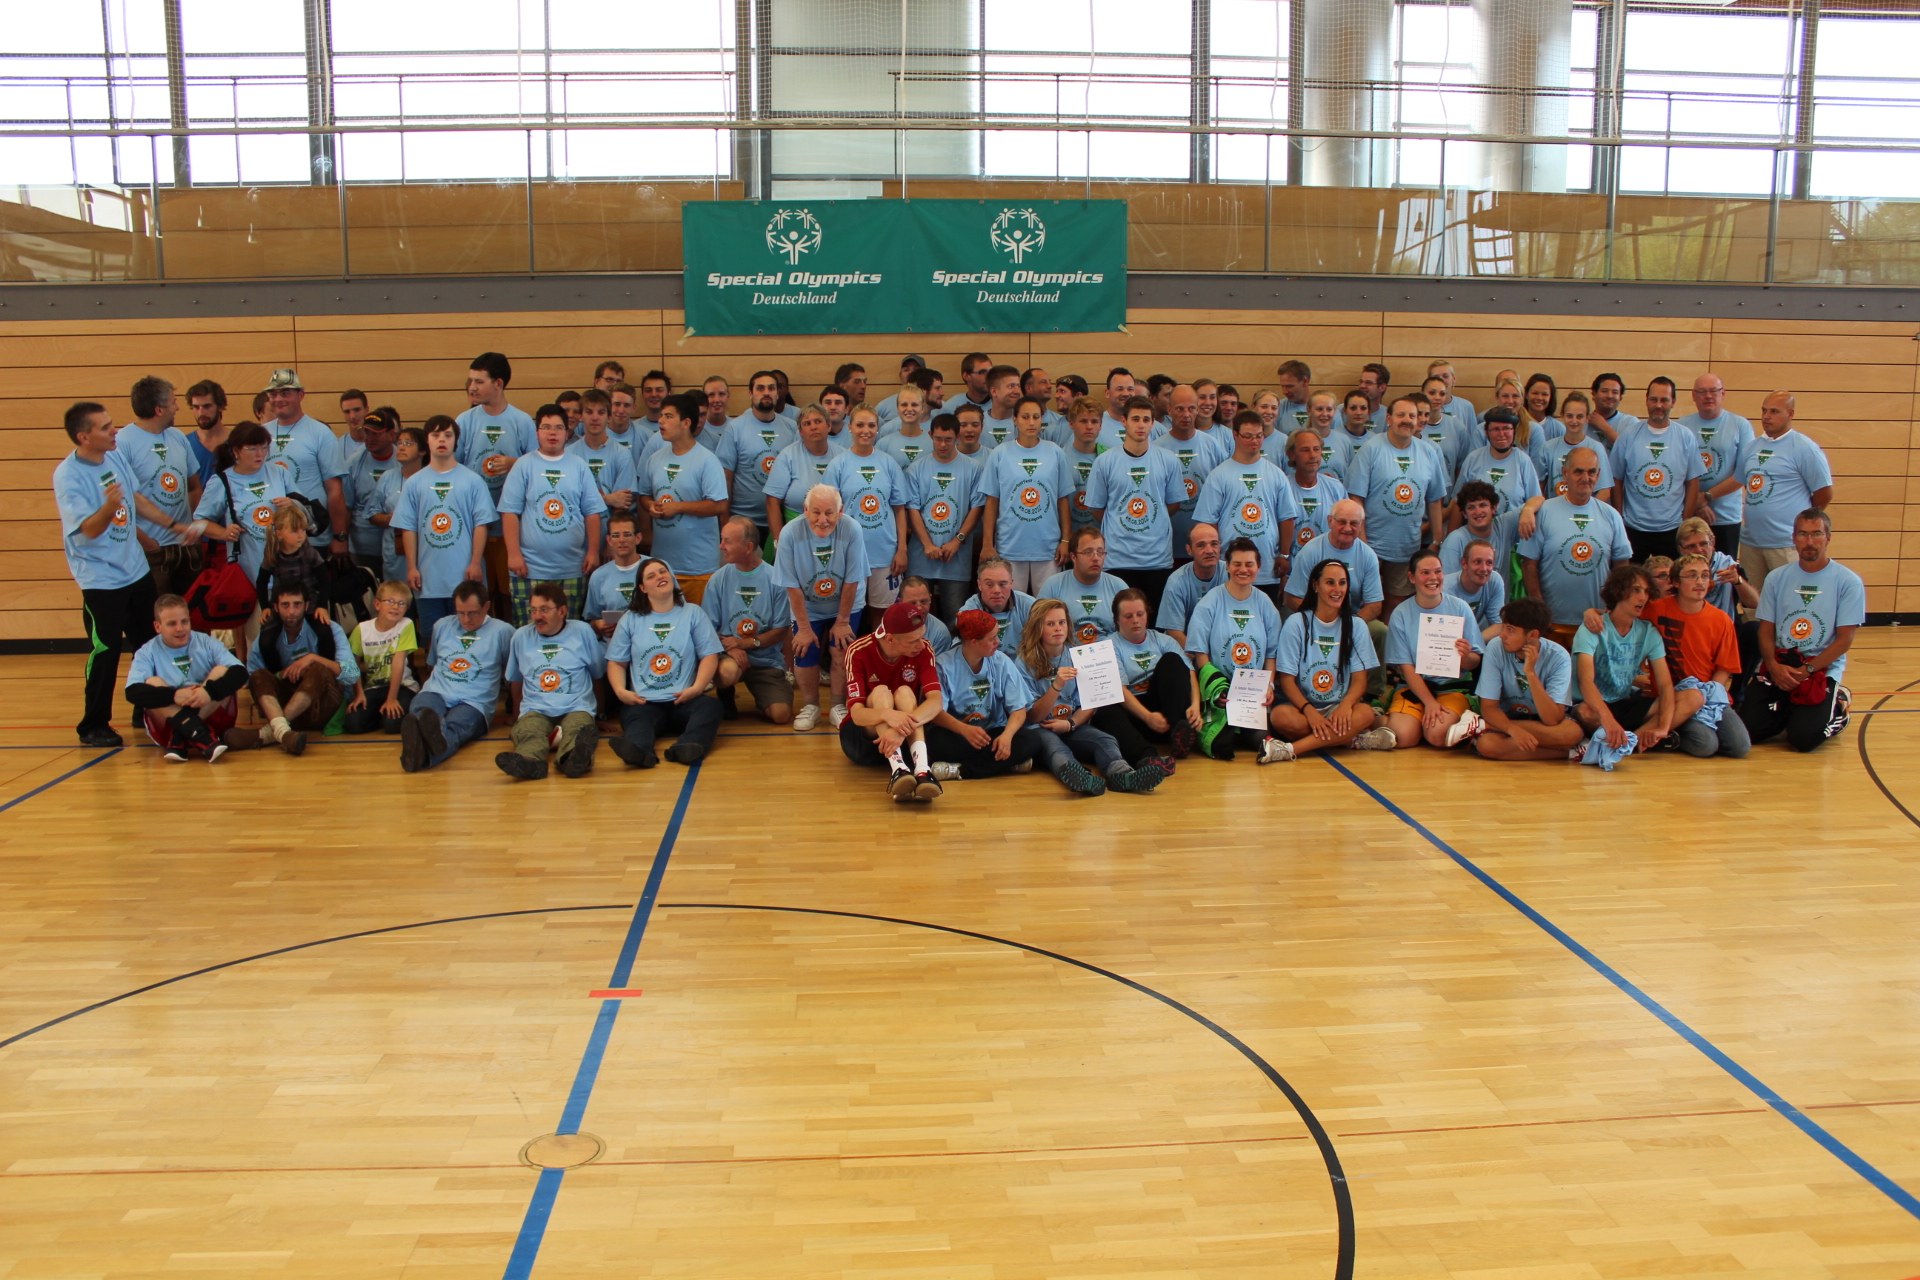 Special Olympics Herbstfest-Basketballturnier in Rosenheim wurde großer Erfolg